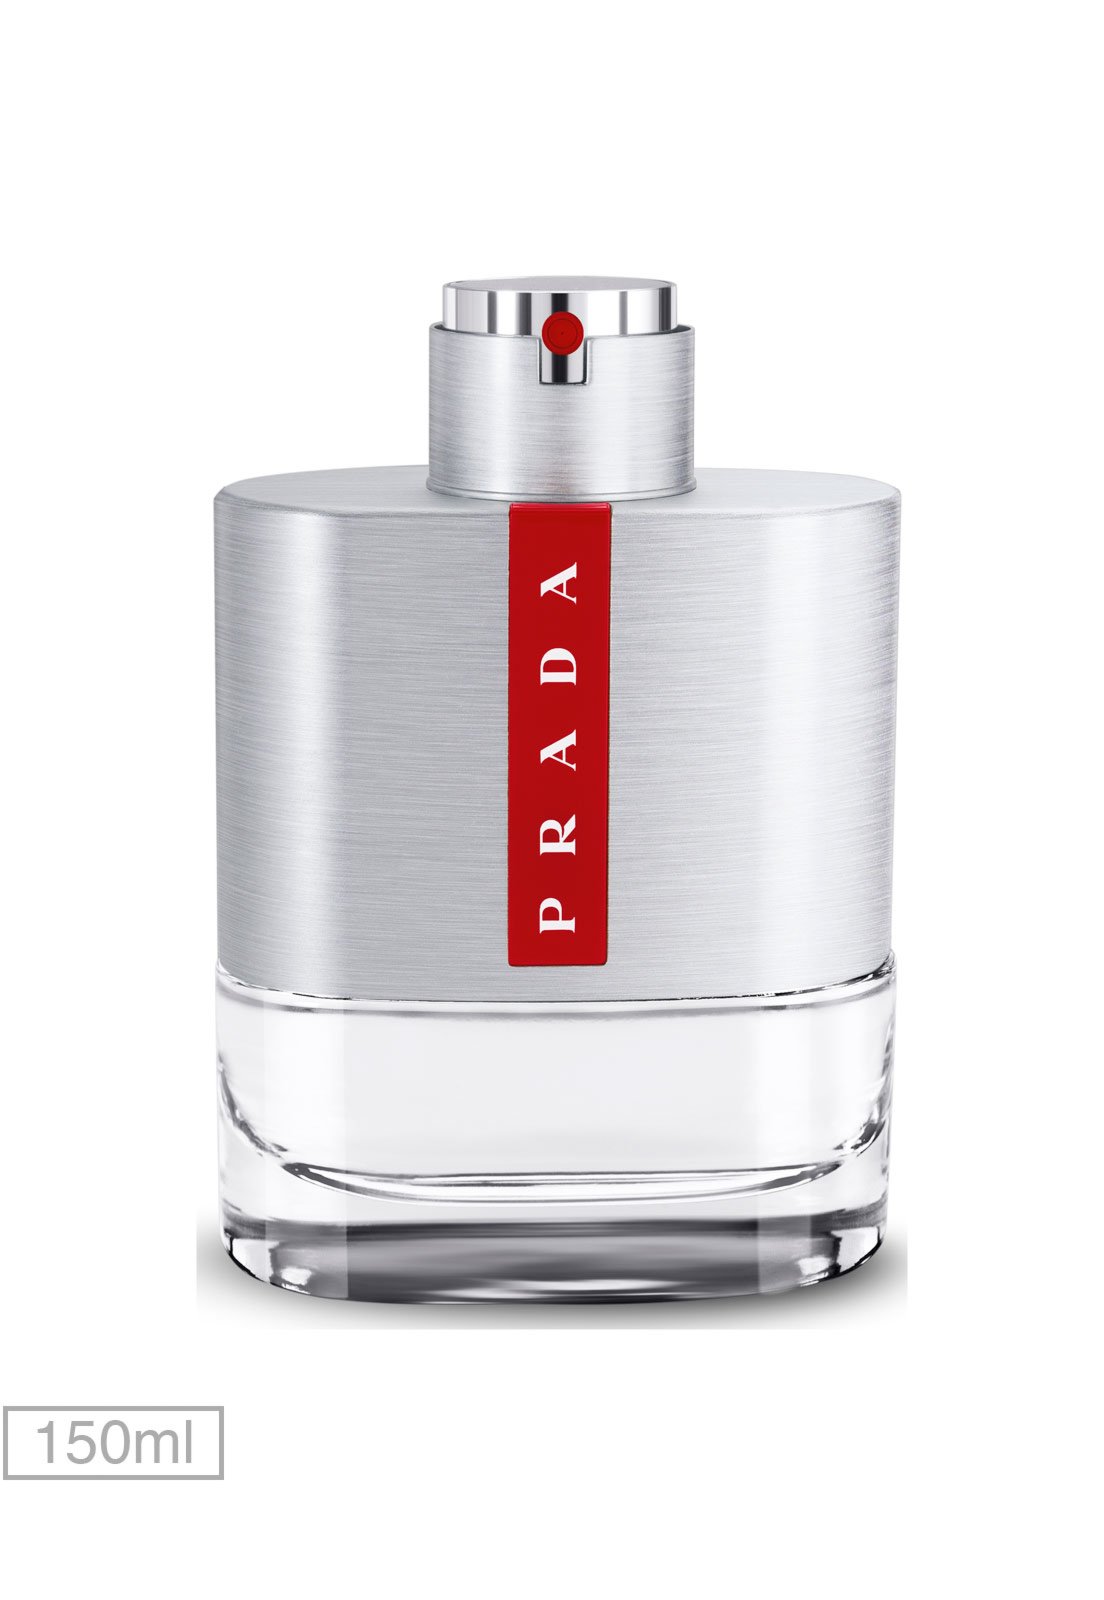 Perfume Luna Rossa Prada 150ml - Compre Agora | Dafiti Brasil